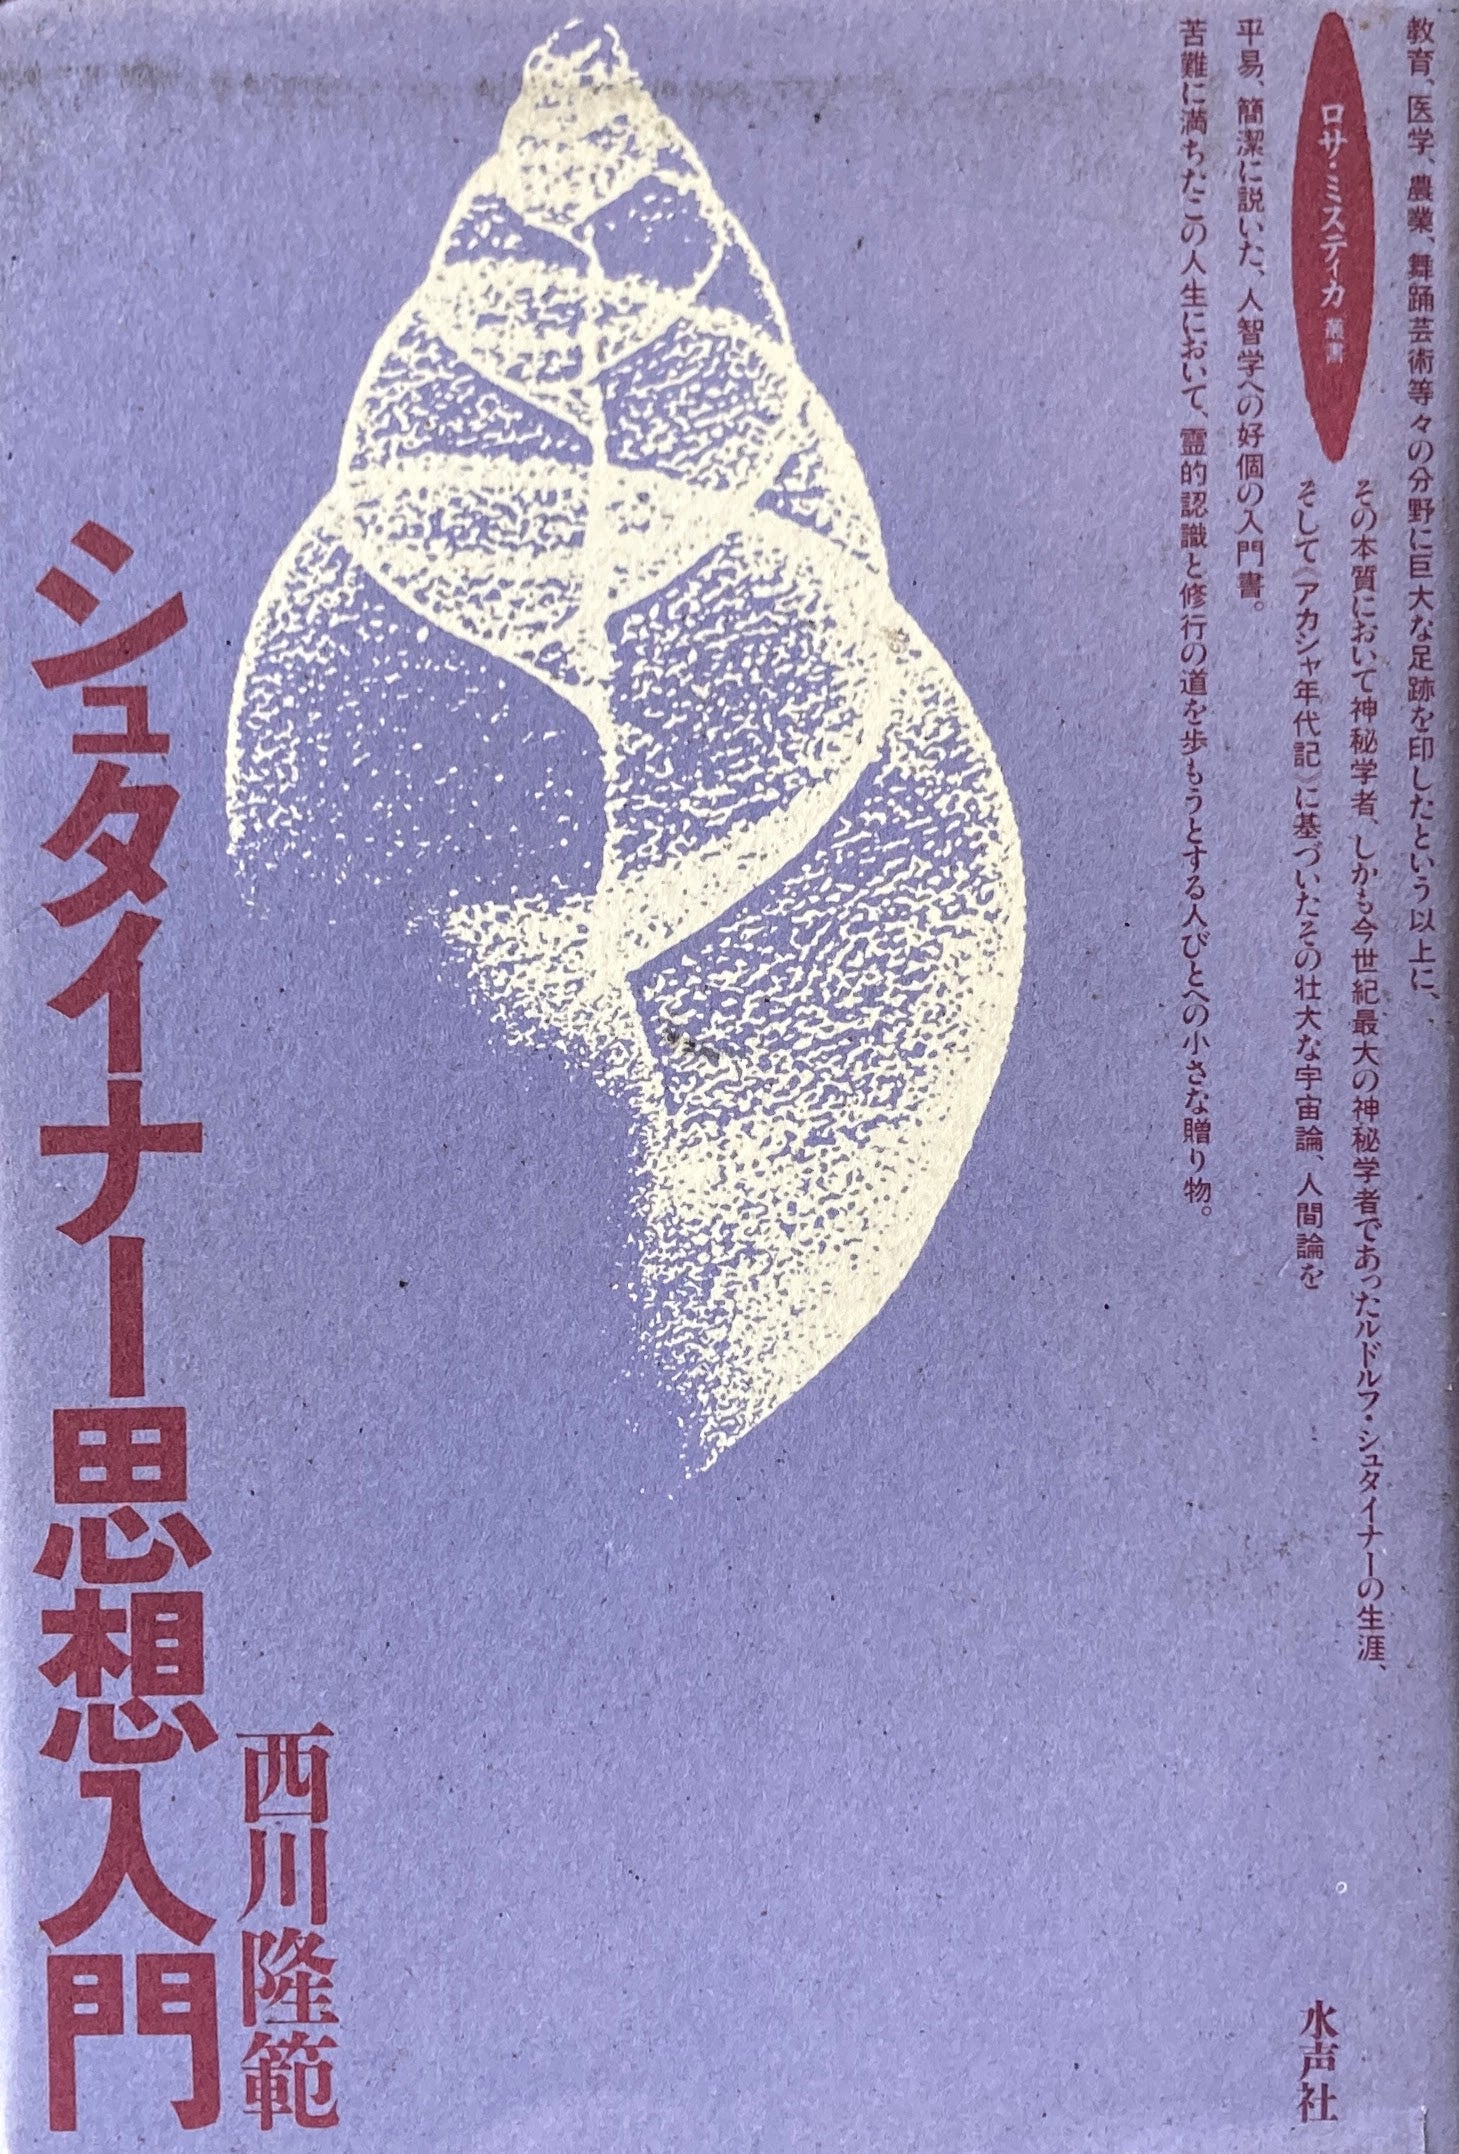 シュタイナー思想入門 西川隆範 – smokebooks shop